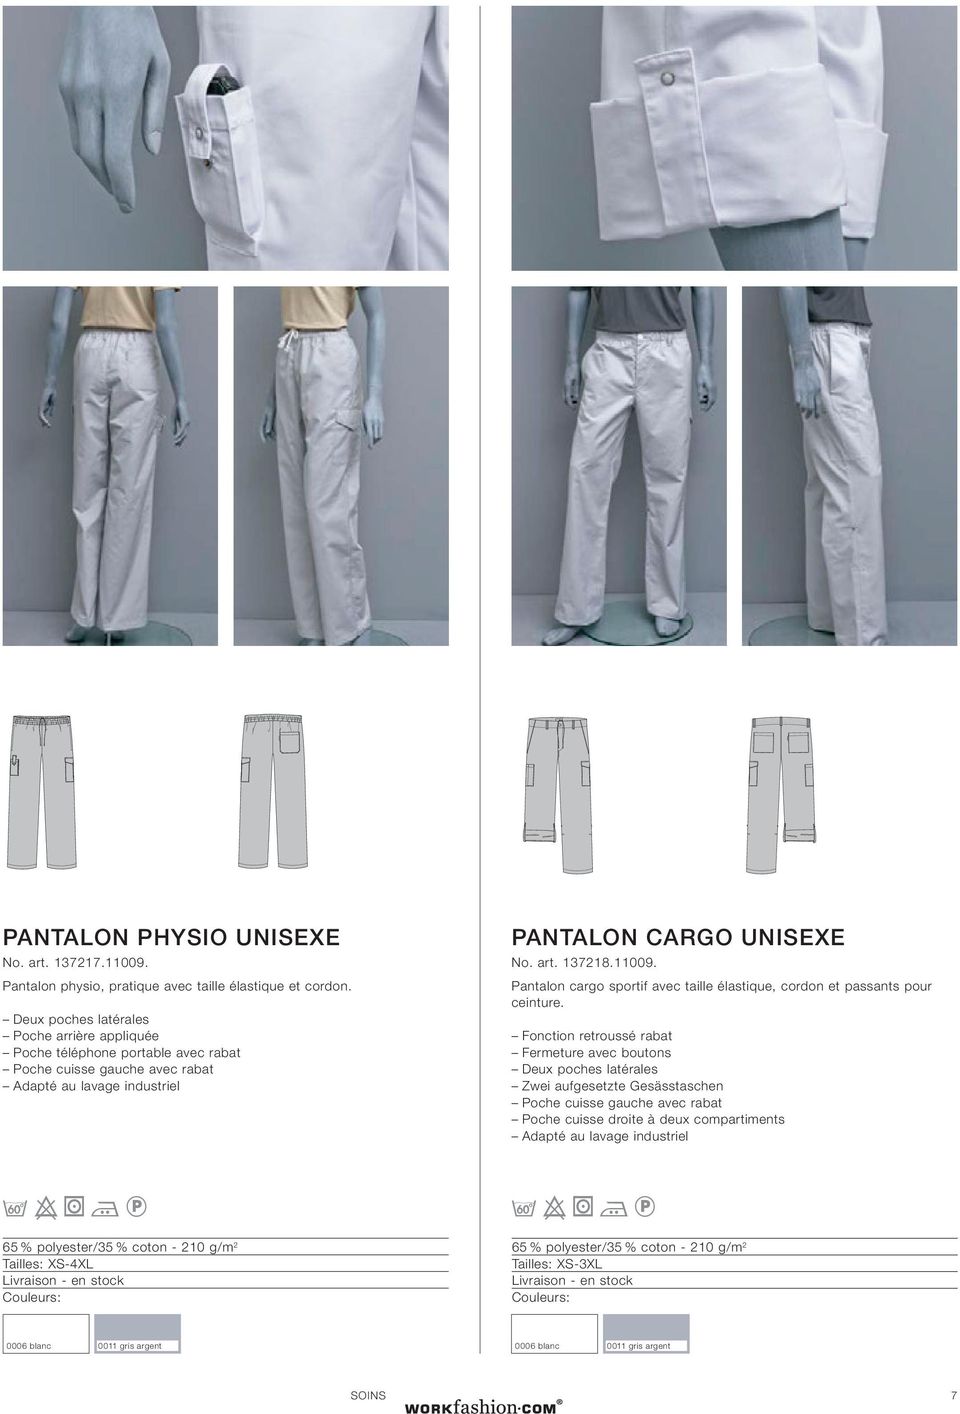 UNISEXE No. art. 137218.11009. Pantalon cargo sportif avec taille élastique, cordon et passants pour ceinture.